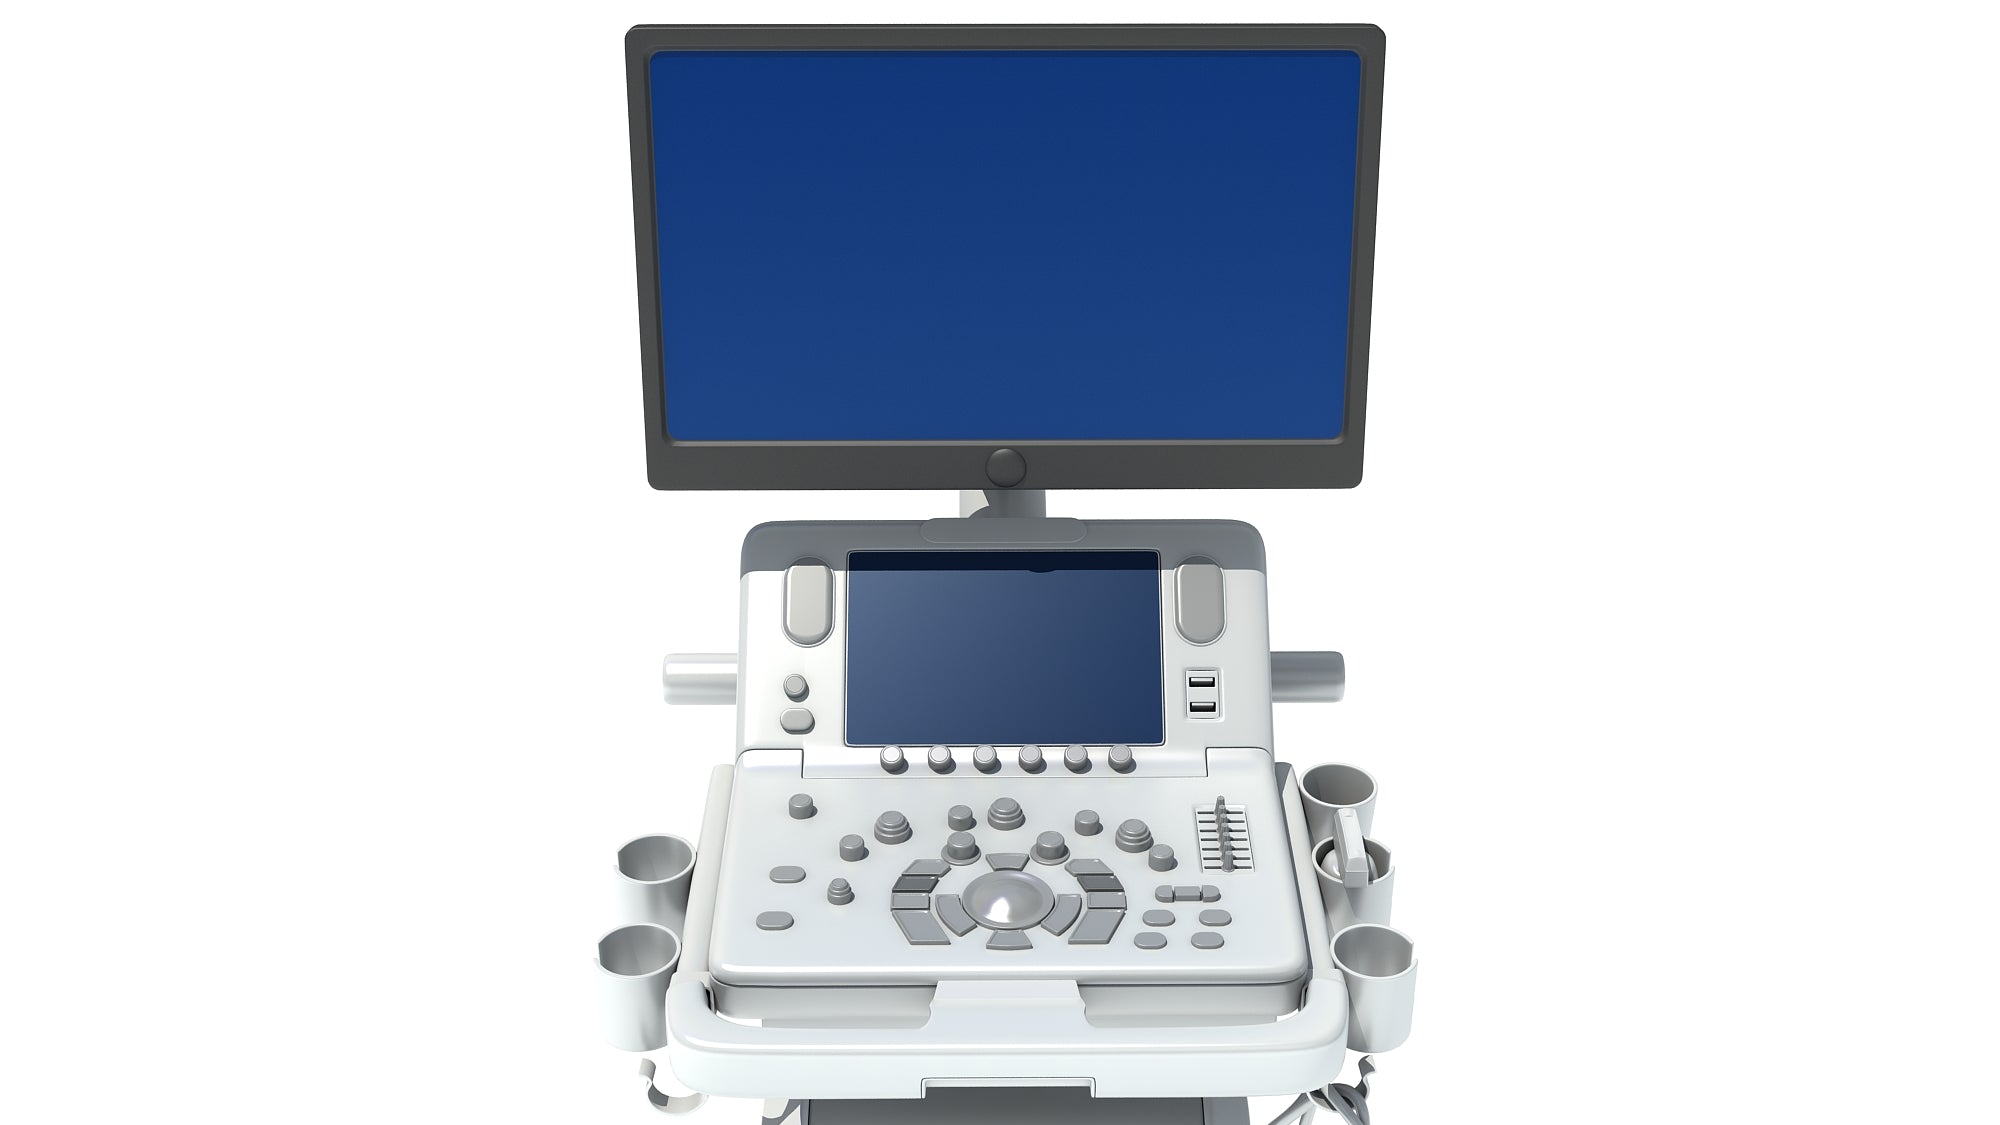 Ultrasound System Scanner